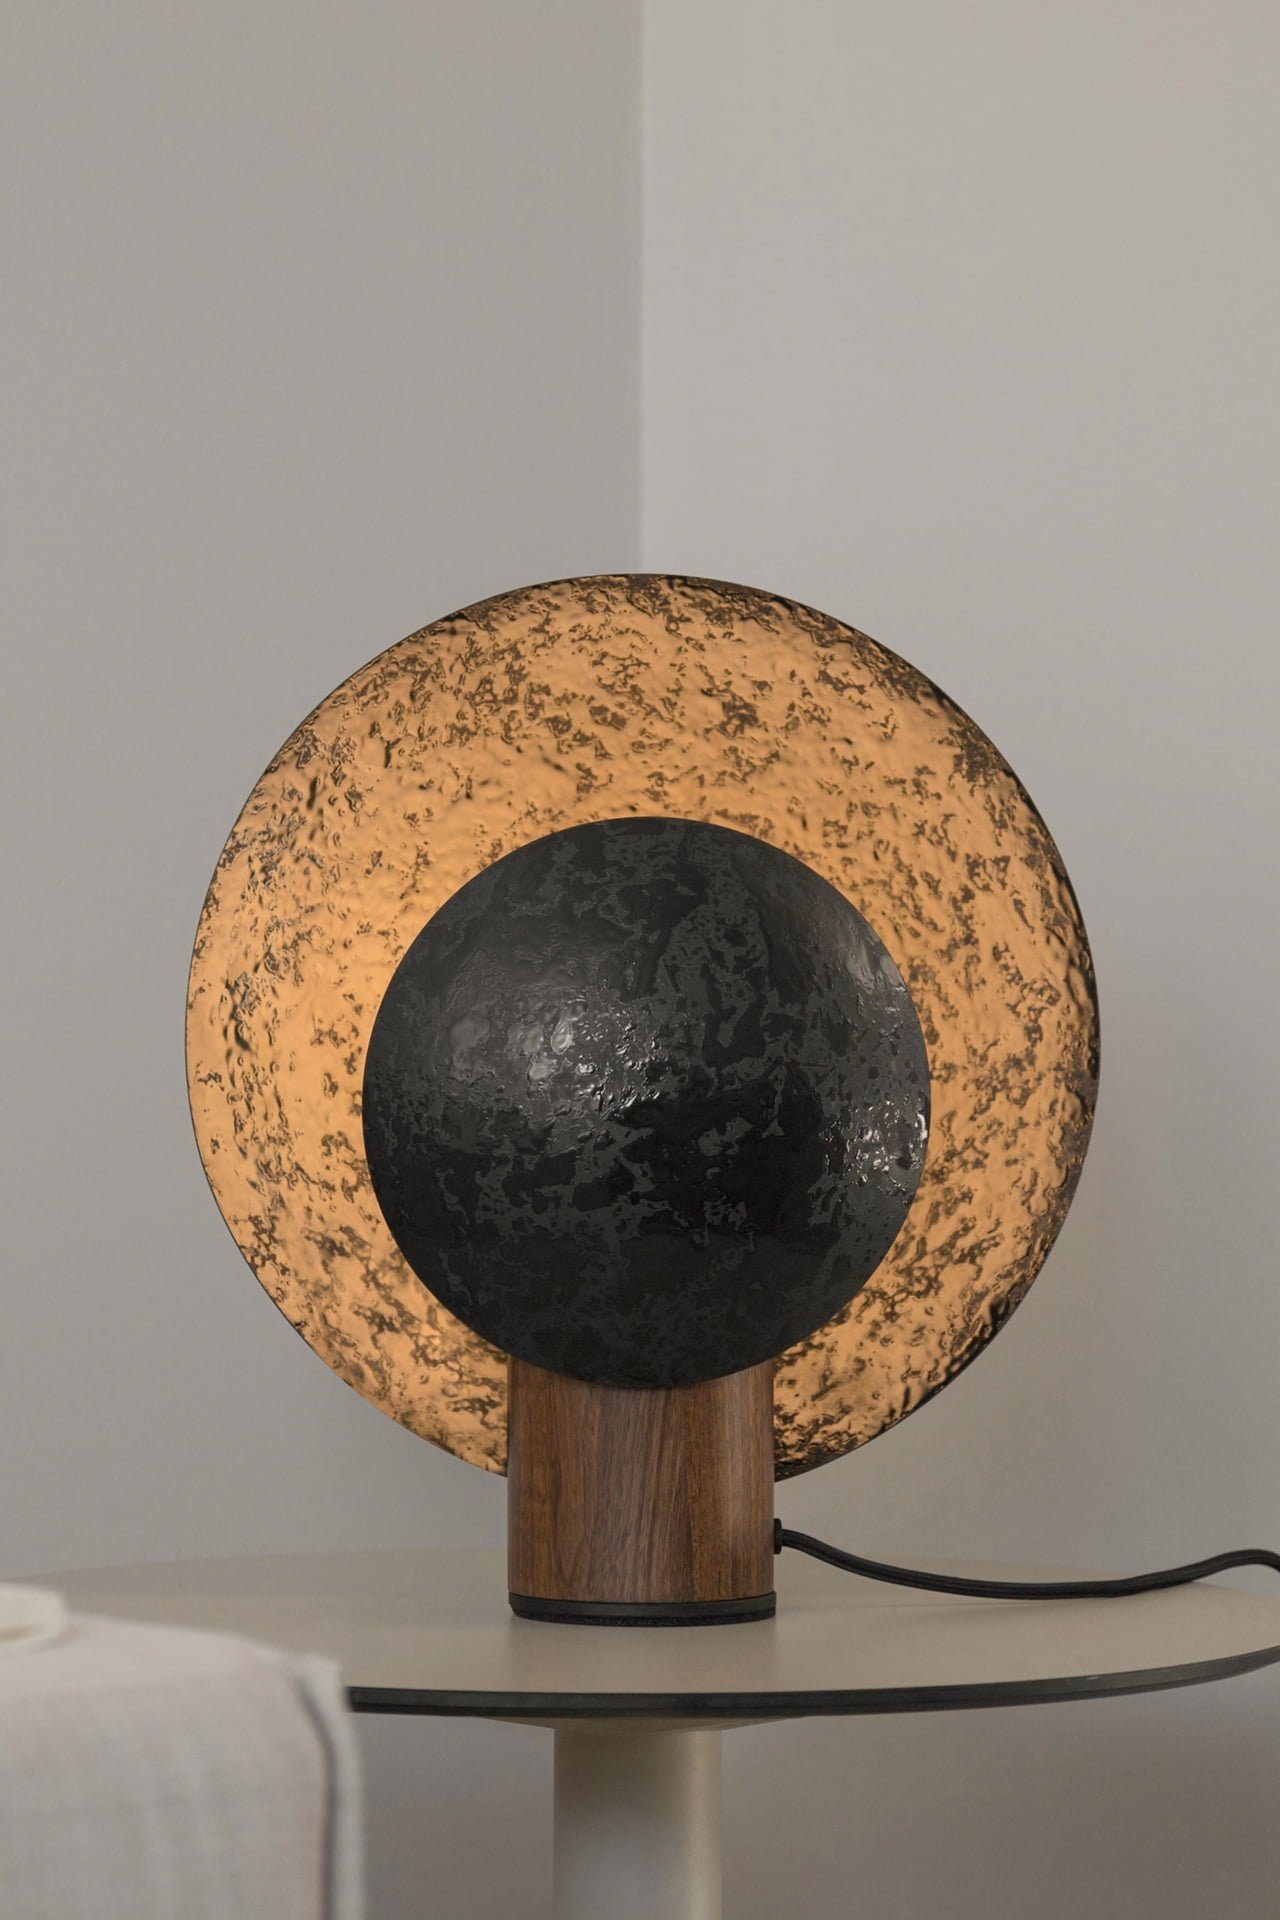 Wooden desk lamp designed by Bandido.